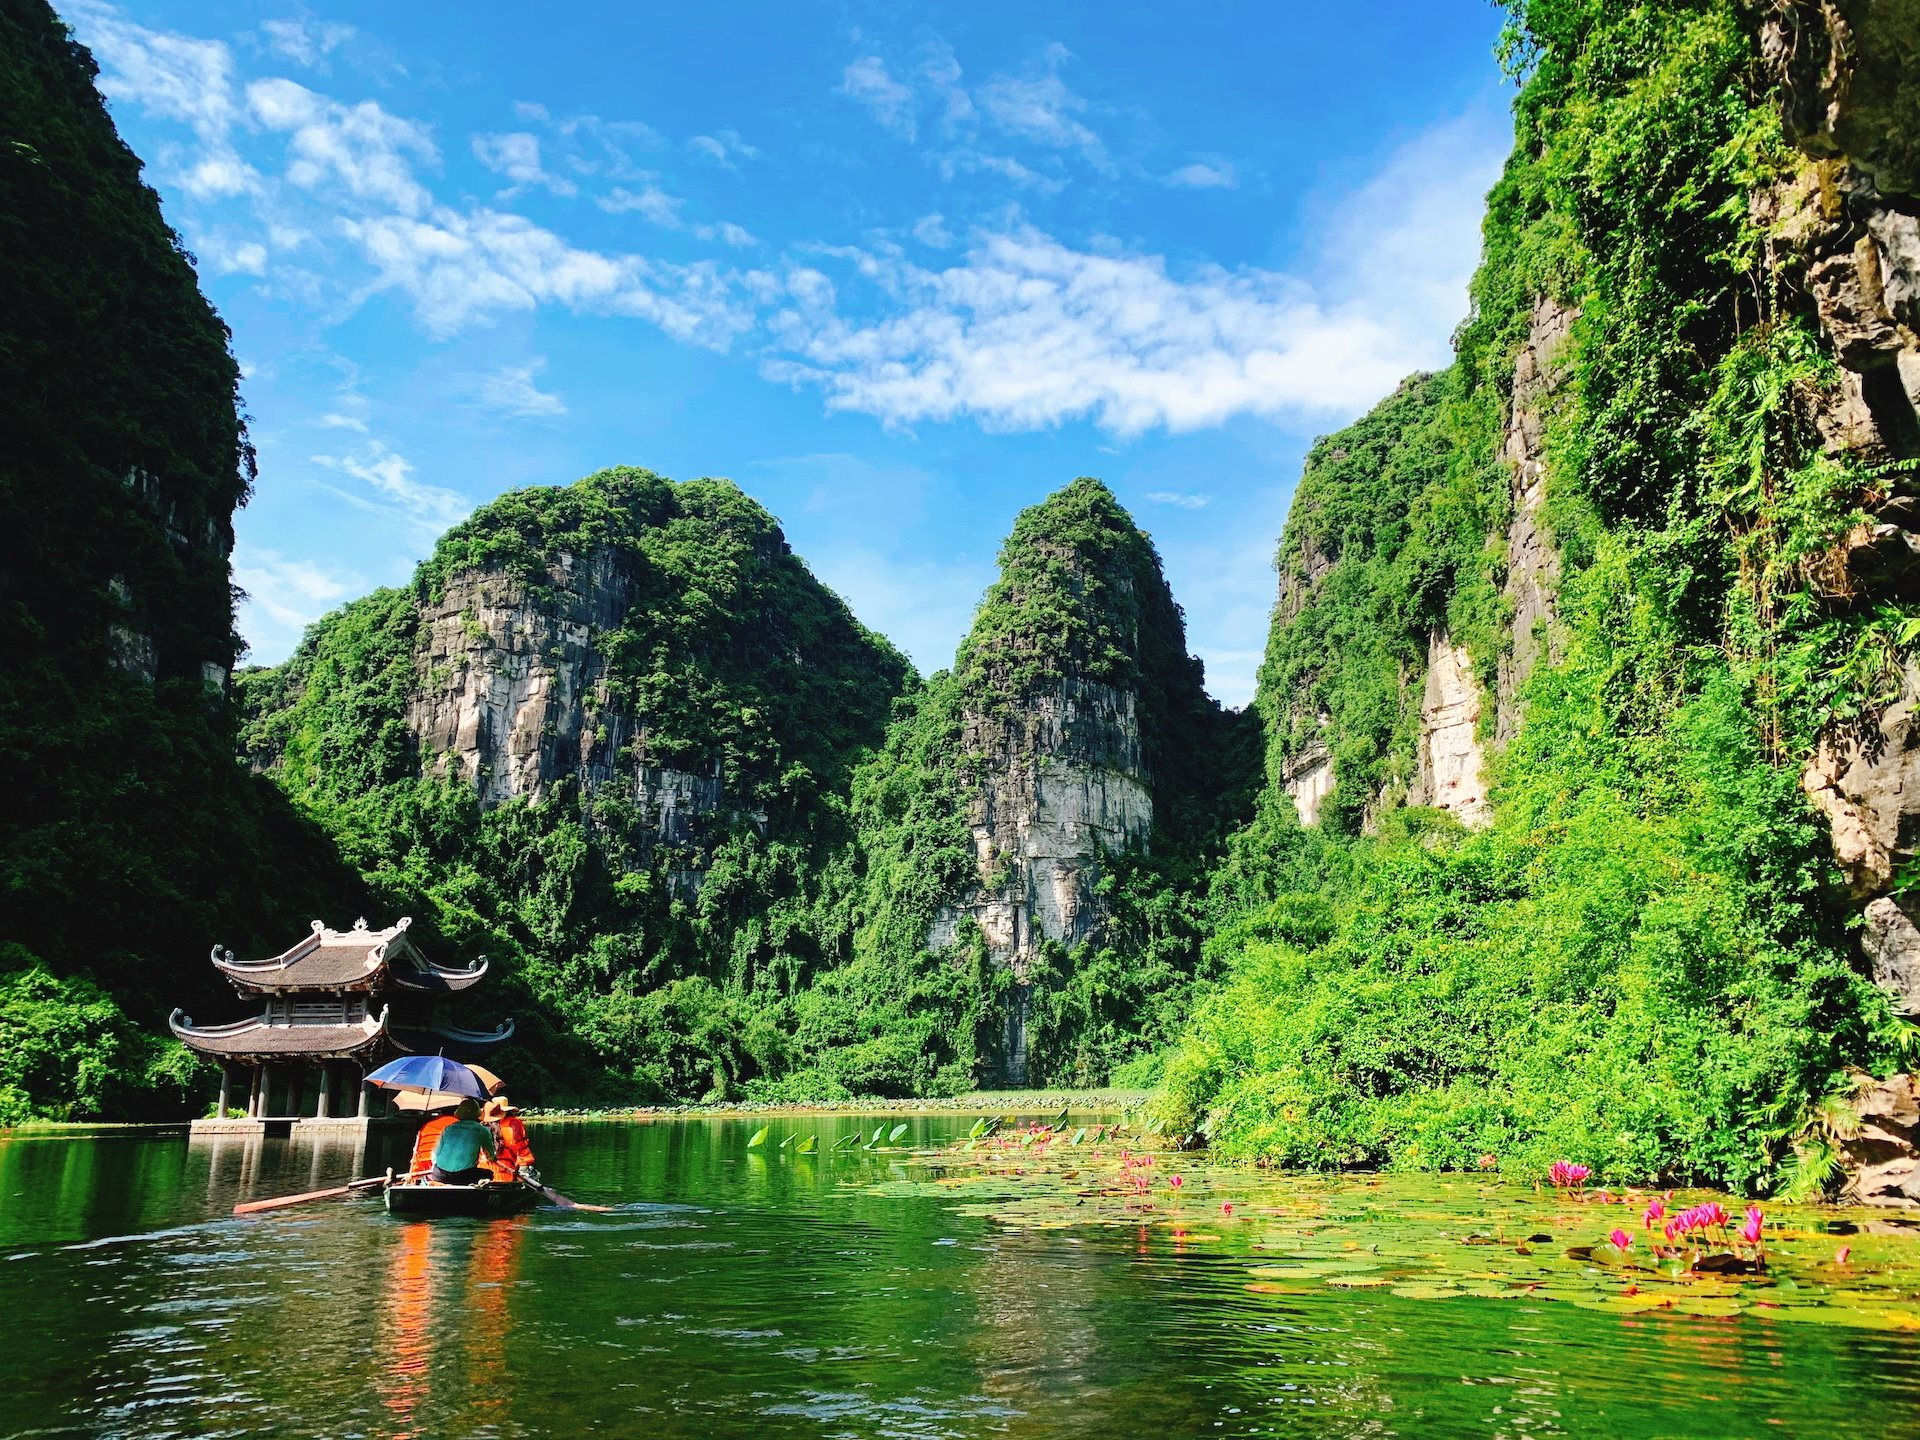 Khu sinh thái Tràng An được xem là một trong những  danh lam thắng cảnh bậc nhất Việt Nam